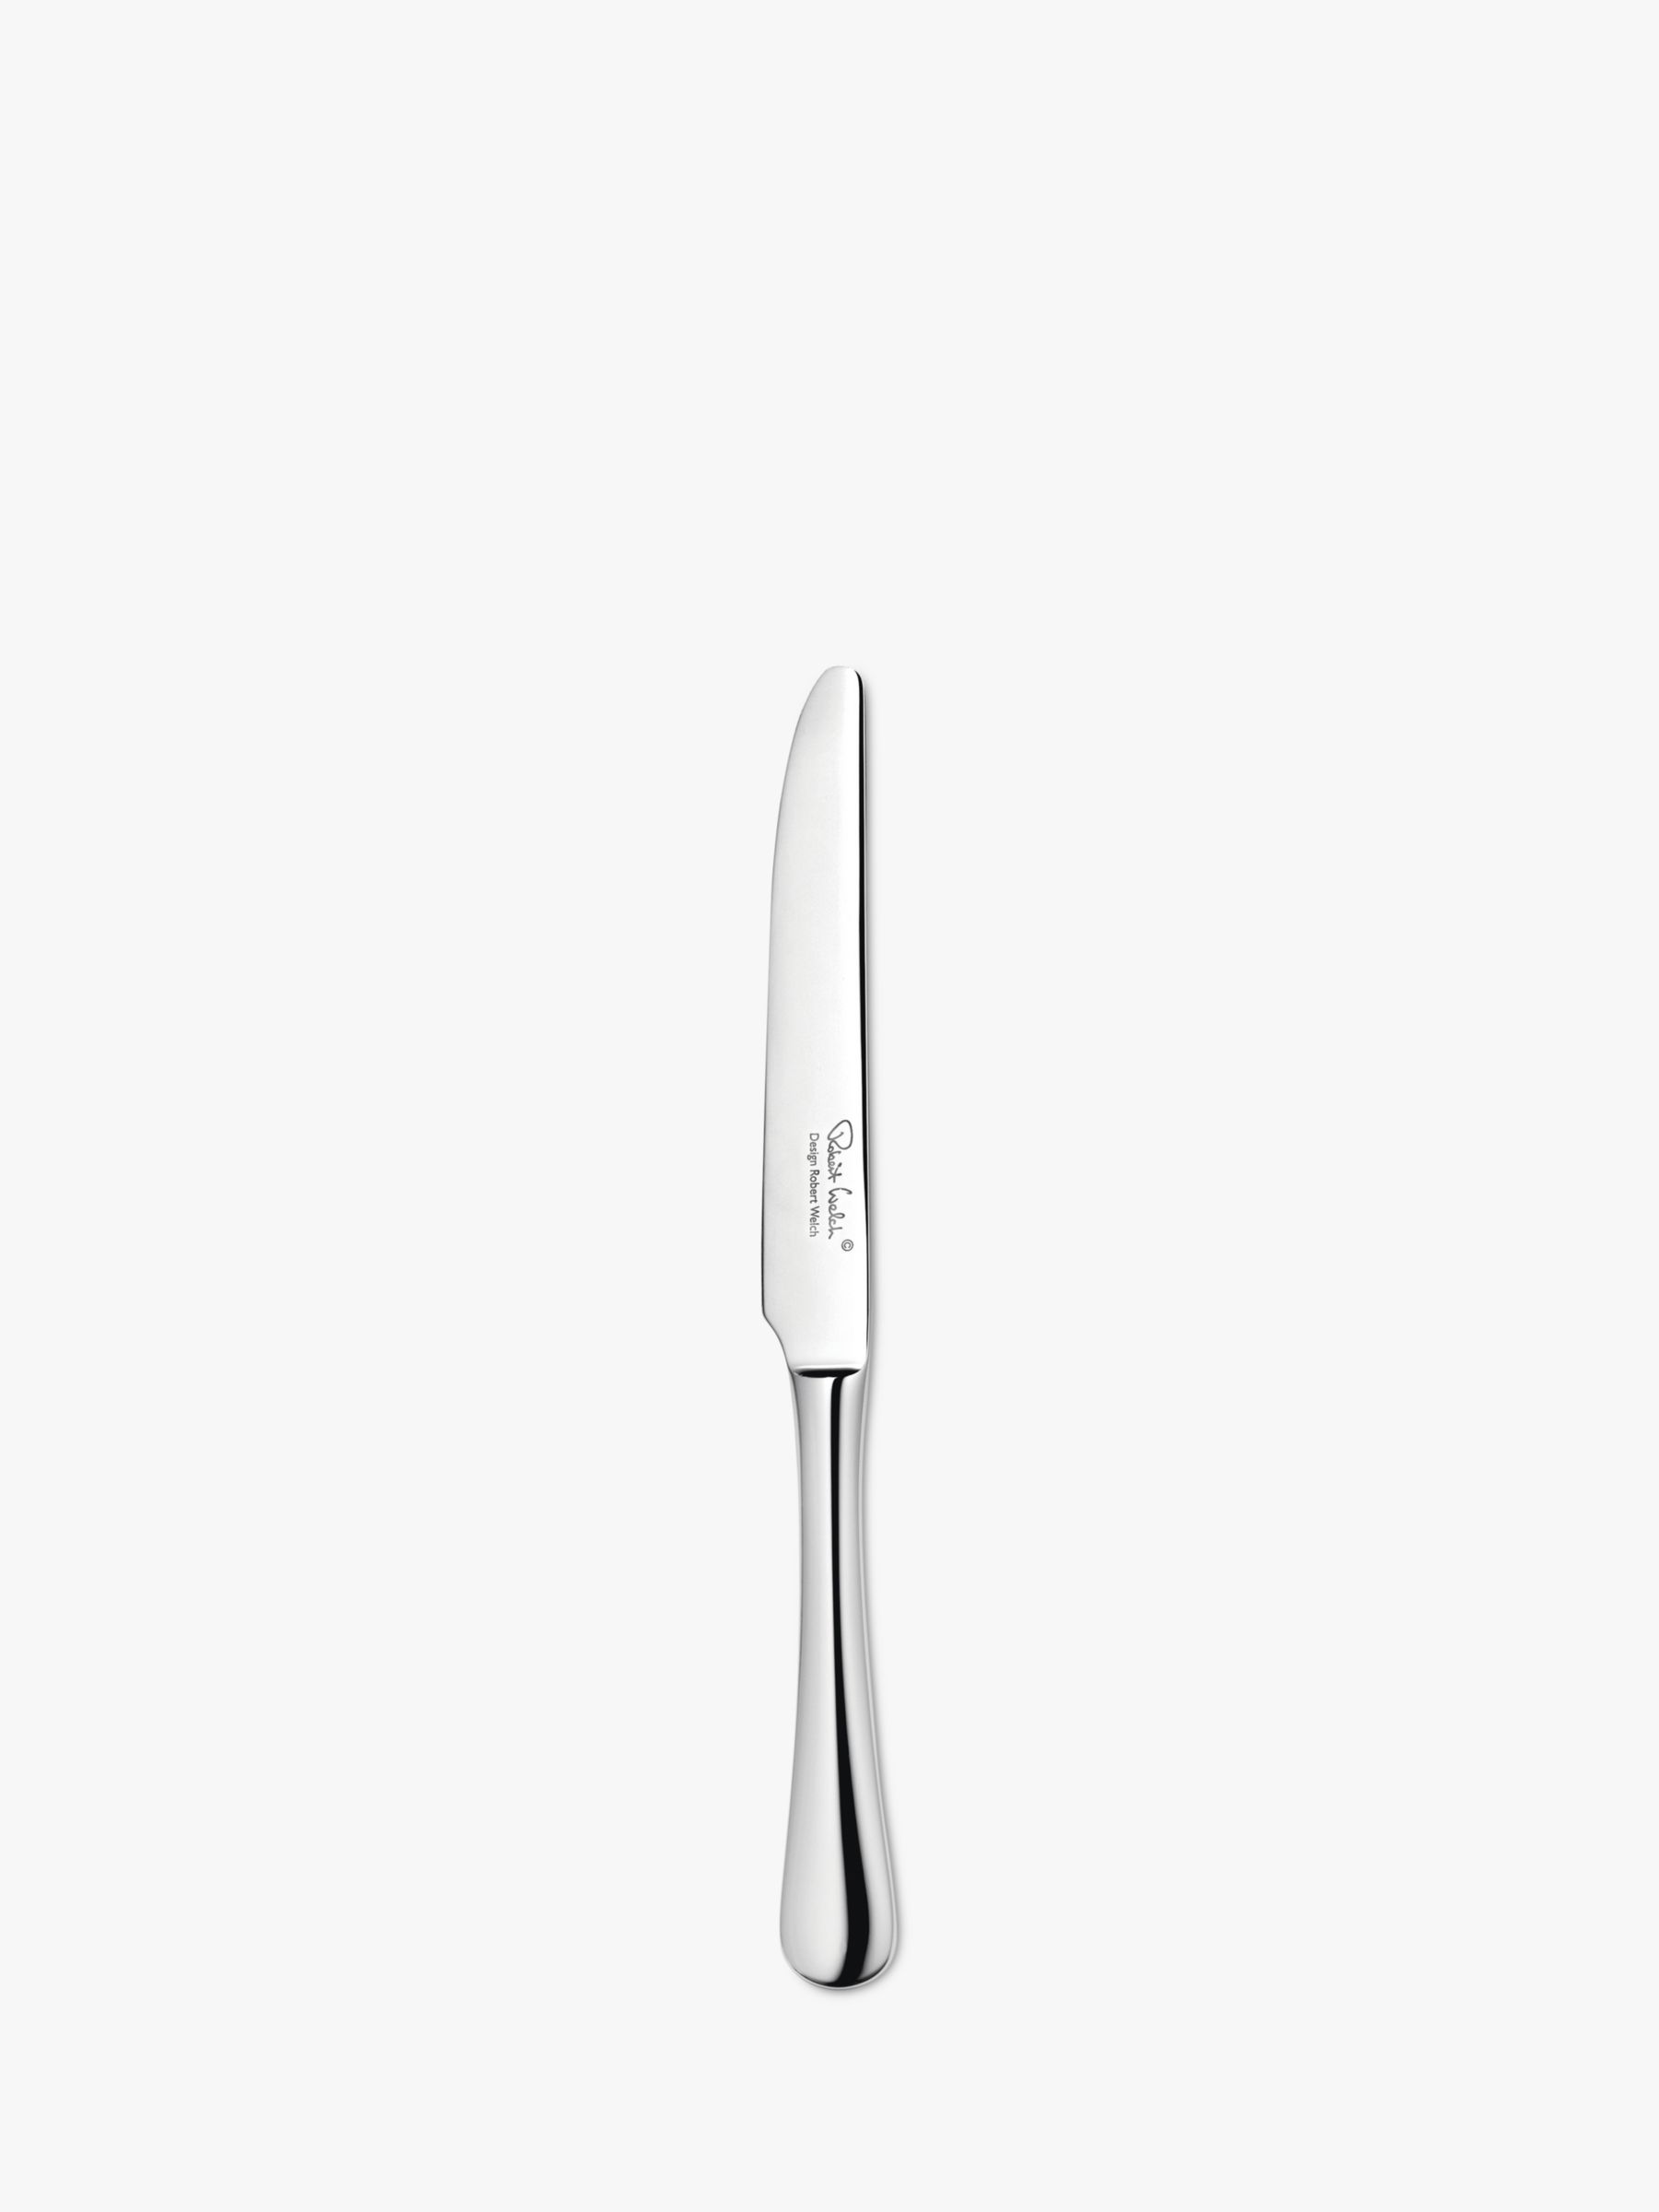 Radford Dessert Knife, Stainless